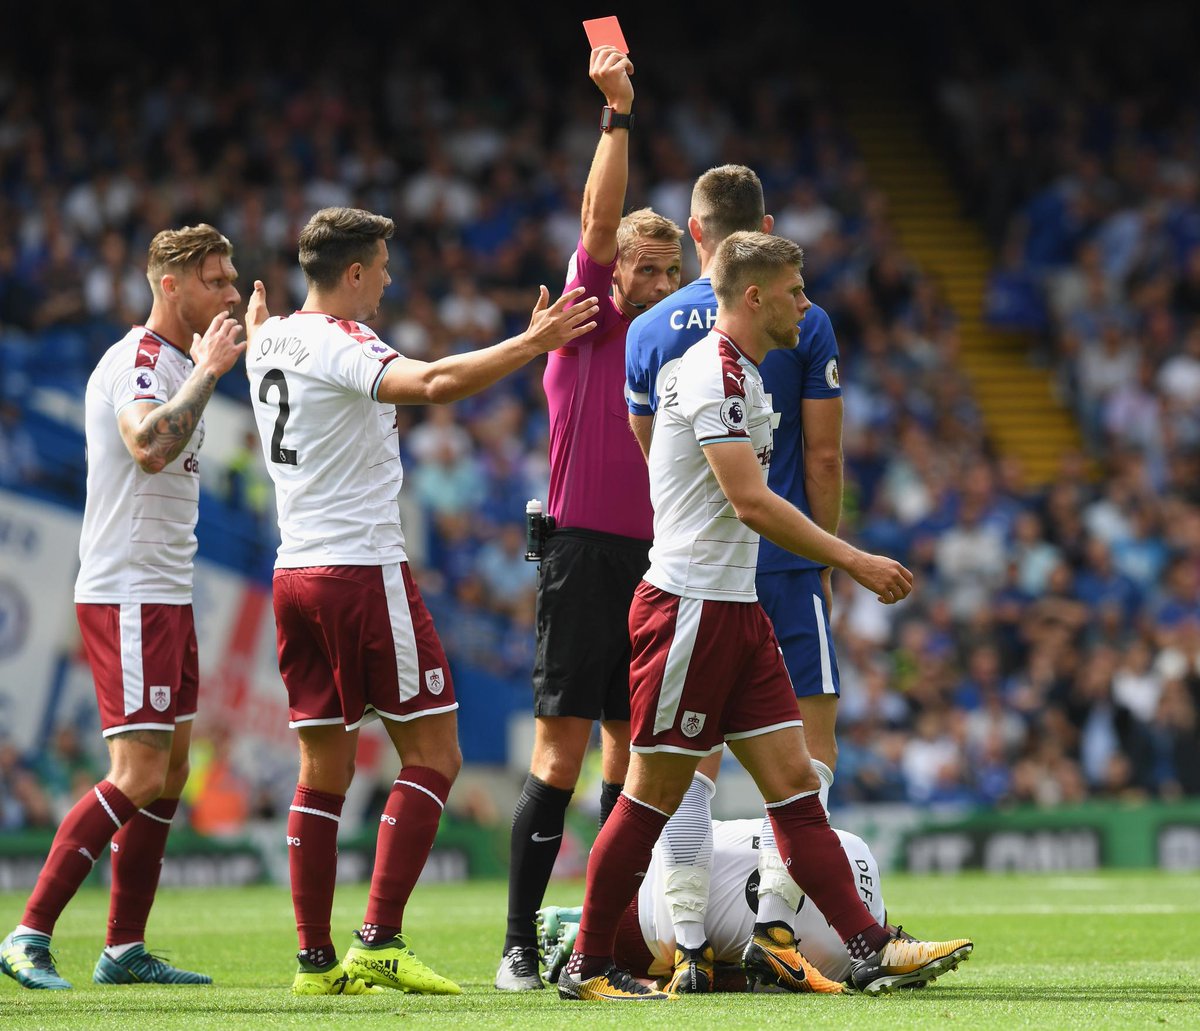 Cahill a Fabrregas dostali za šialené zákroky červené karty. Chelsea padla na úvod doma s Burnley! (VIDEO)